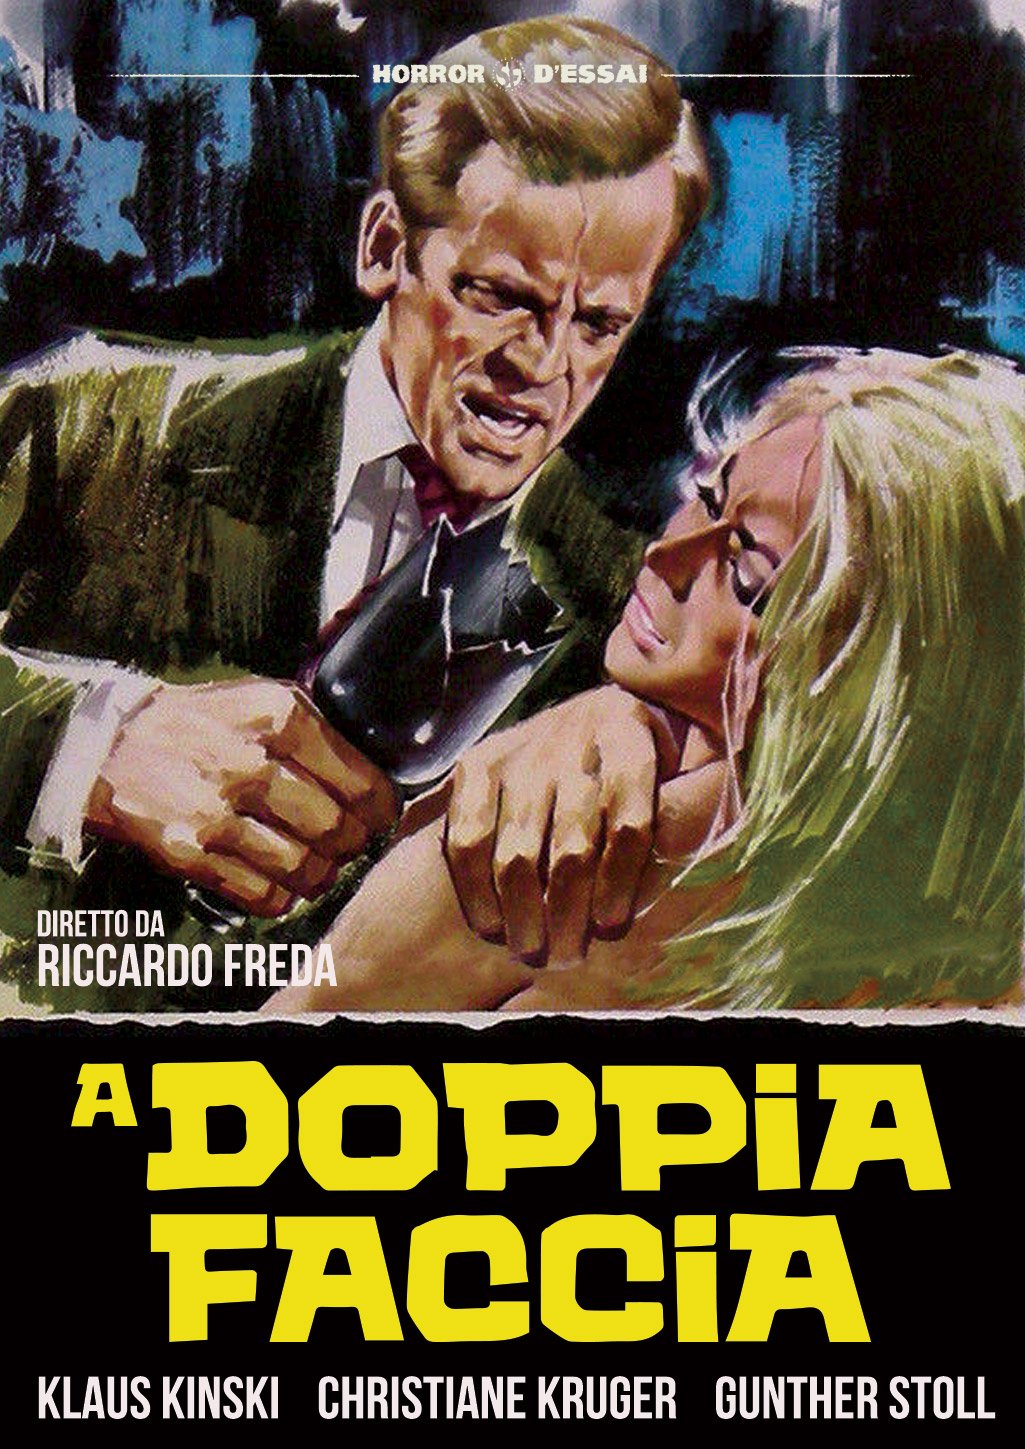 A doppia faccia [HD] (1969)